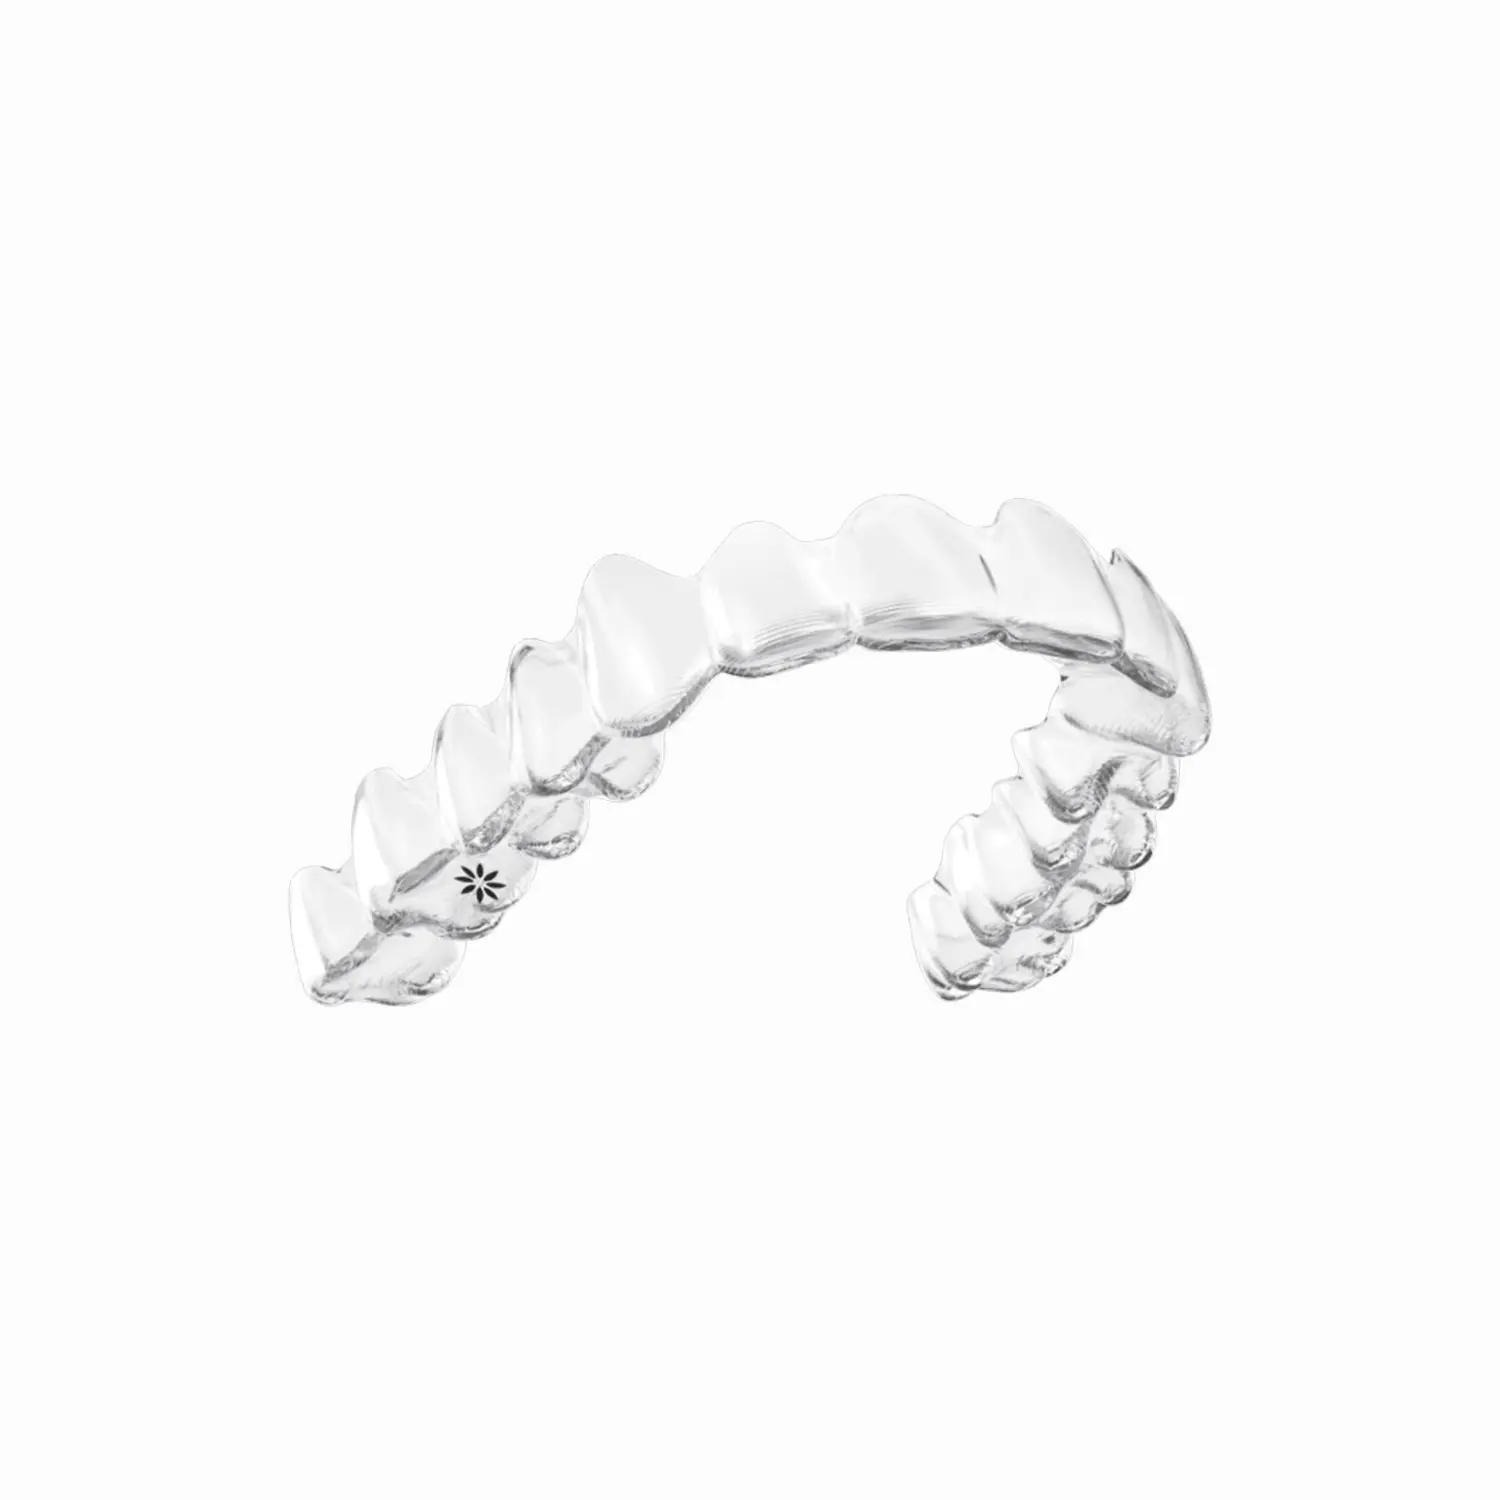 Qualidade High-tech Invisible Braces Factory Direct Dental para Dentes Ortodontia e Alinhamento Dentes